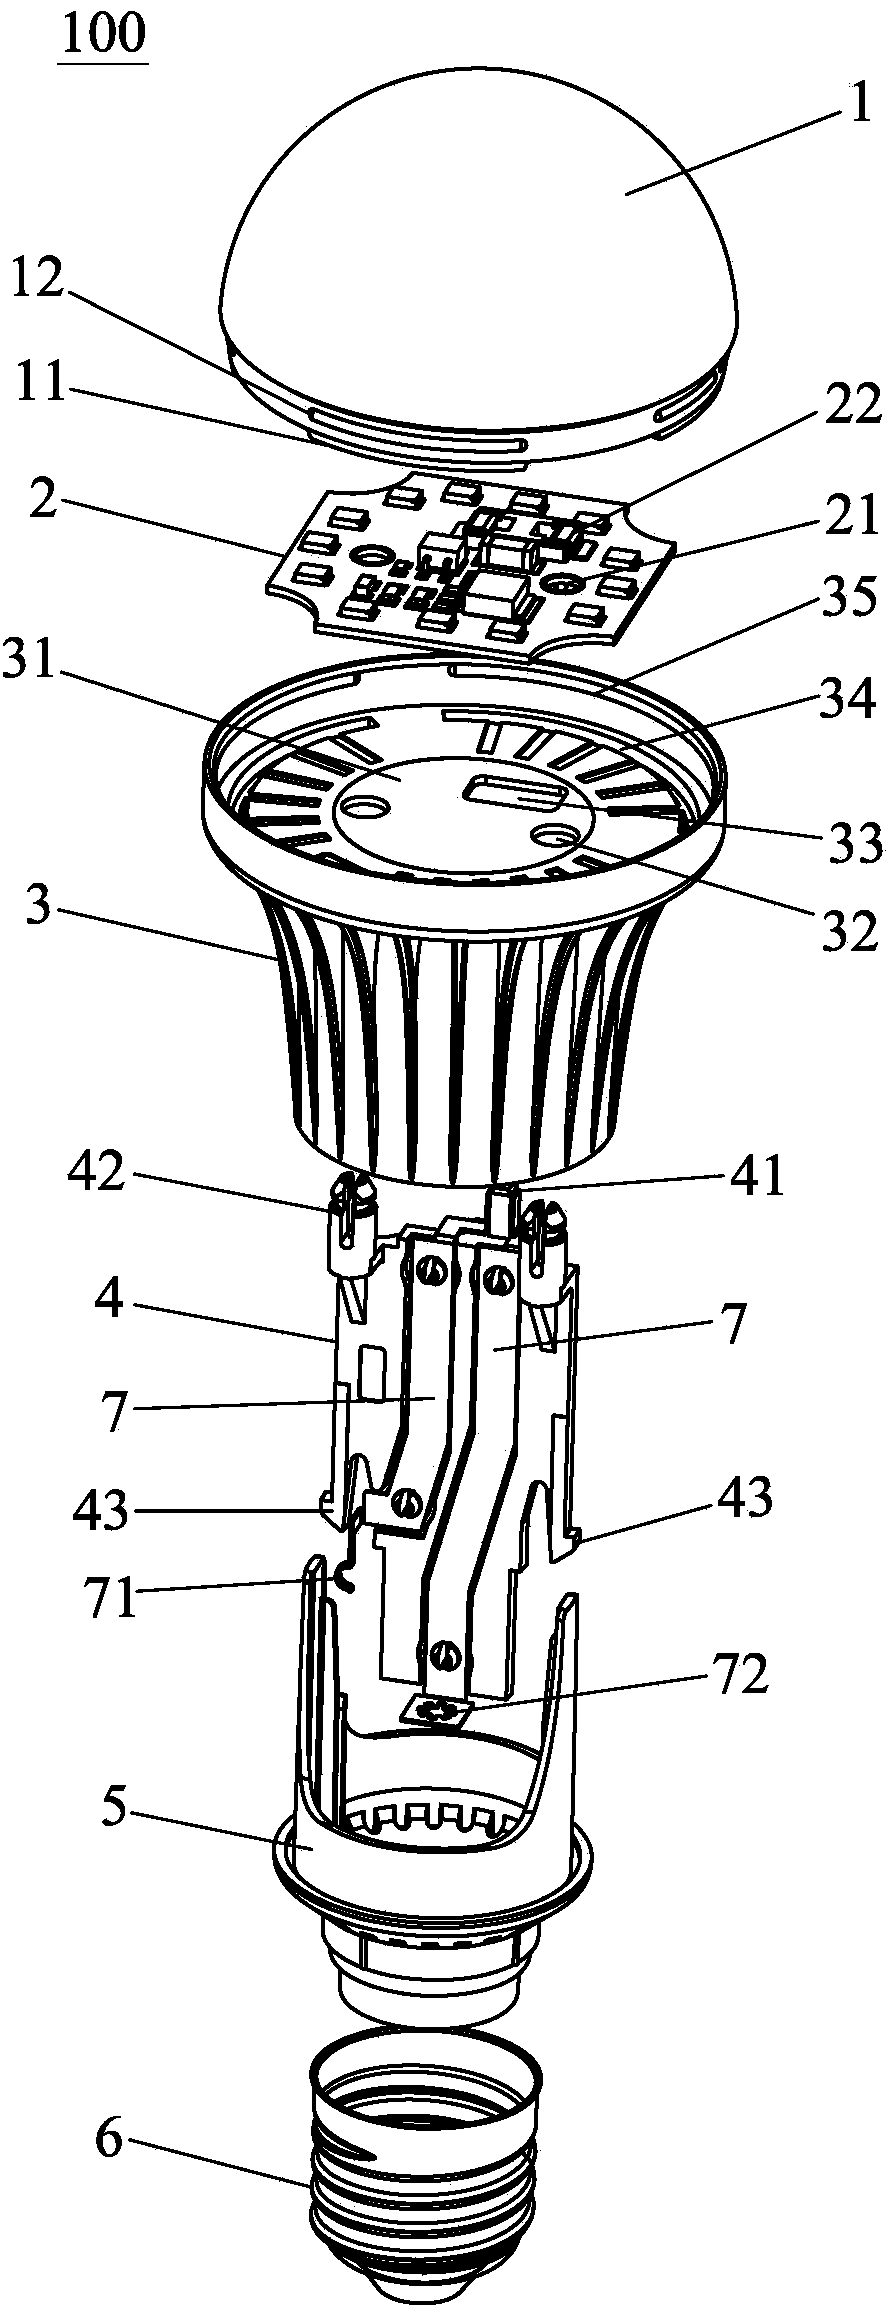 Full-automatic bulb lamp